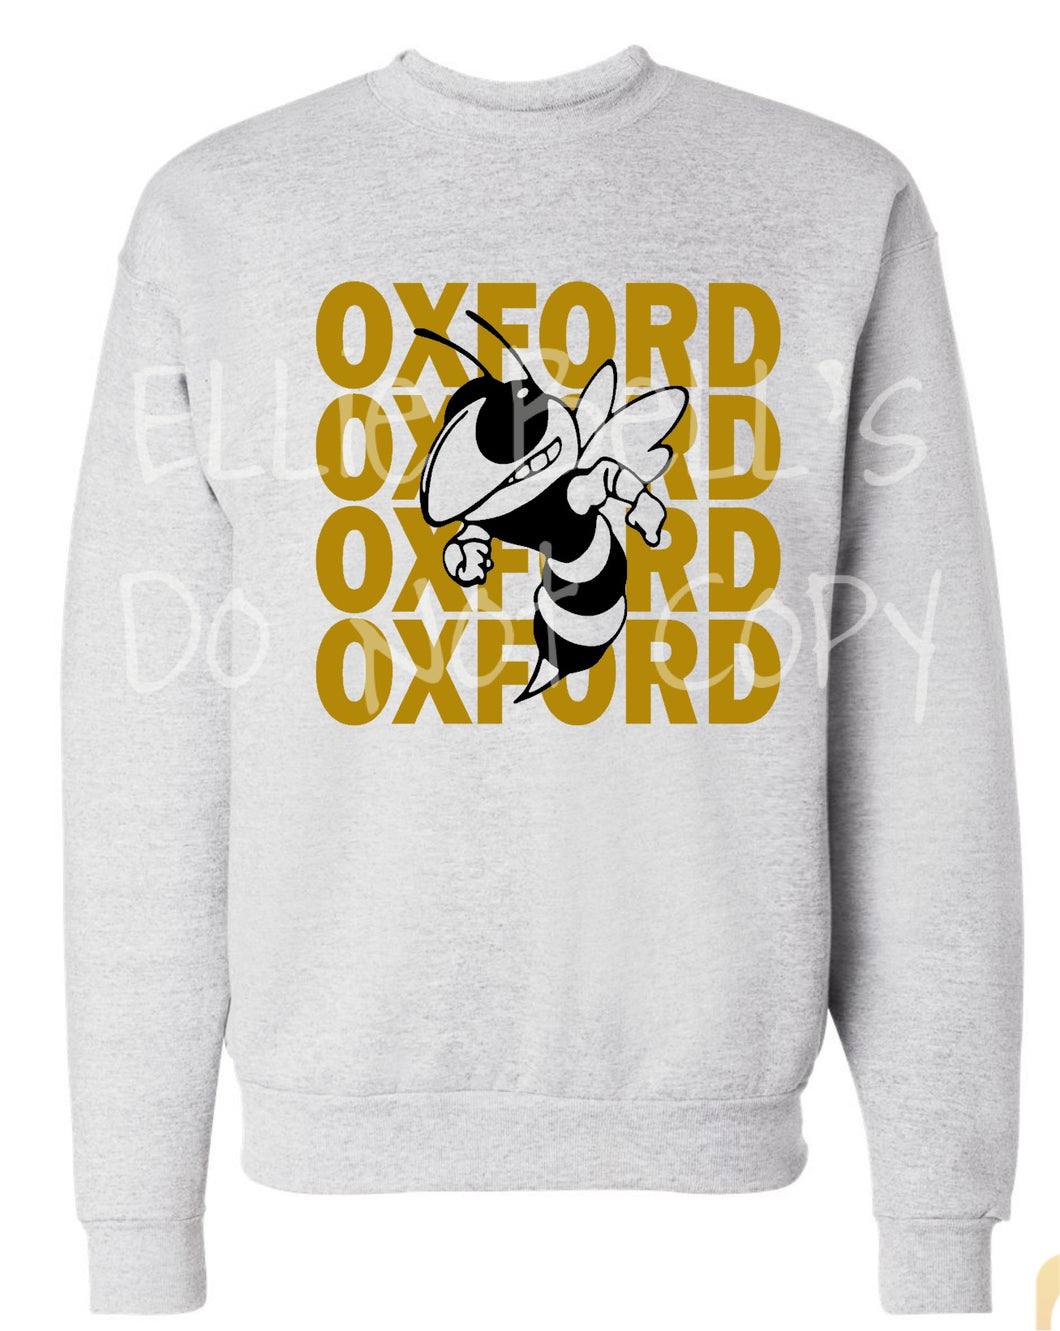 Oxford Yellow Jackets tshirt or sweatshirt